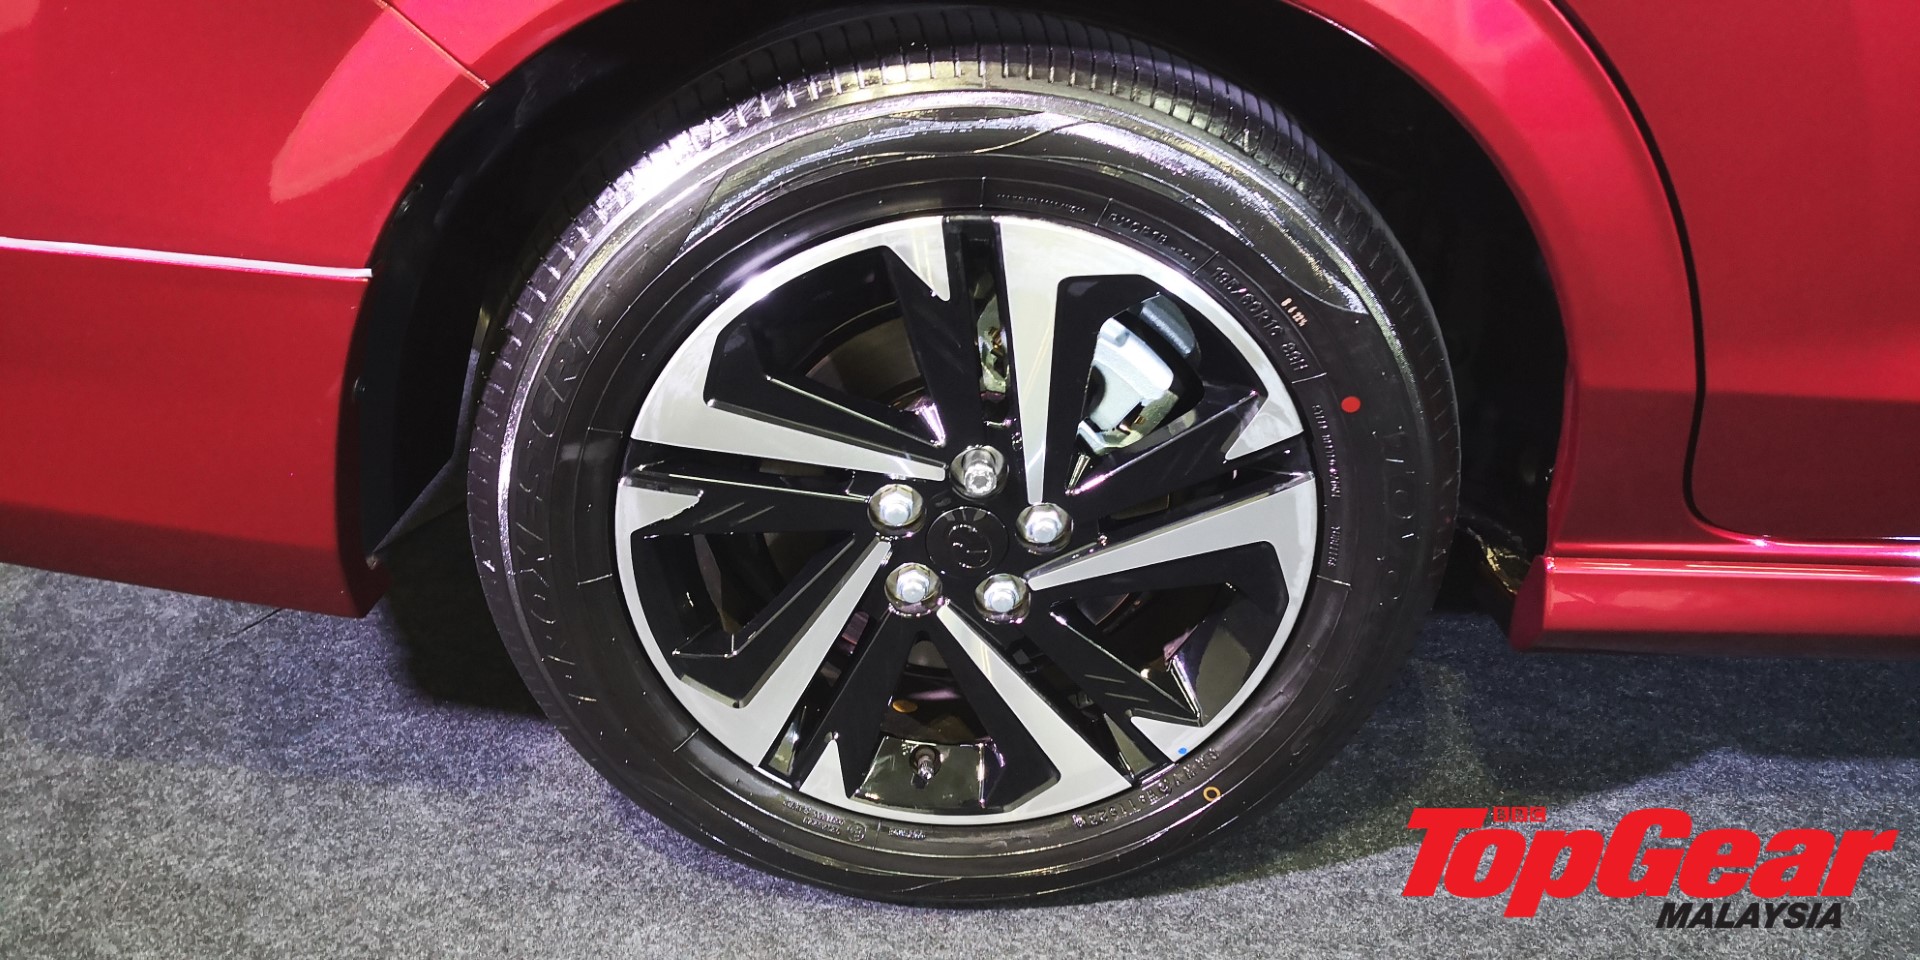 2022 Perodua Alza wheels